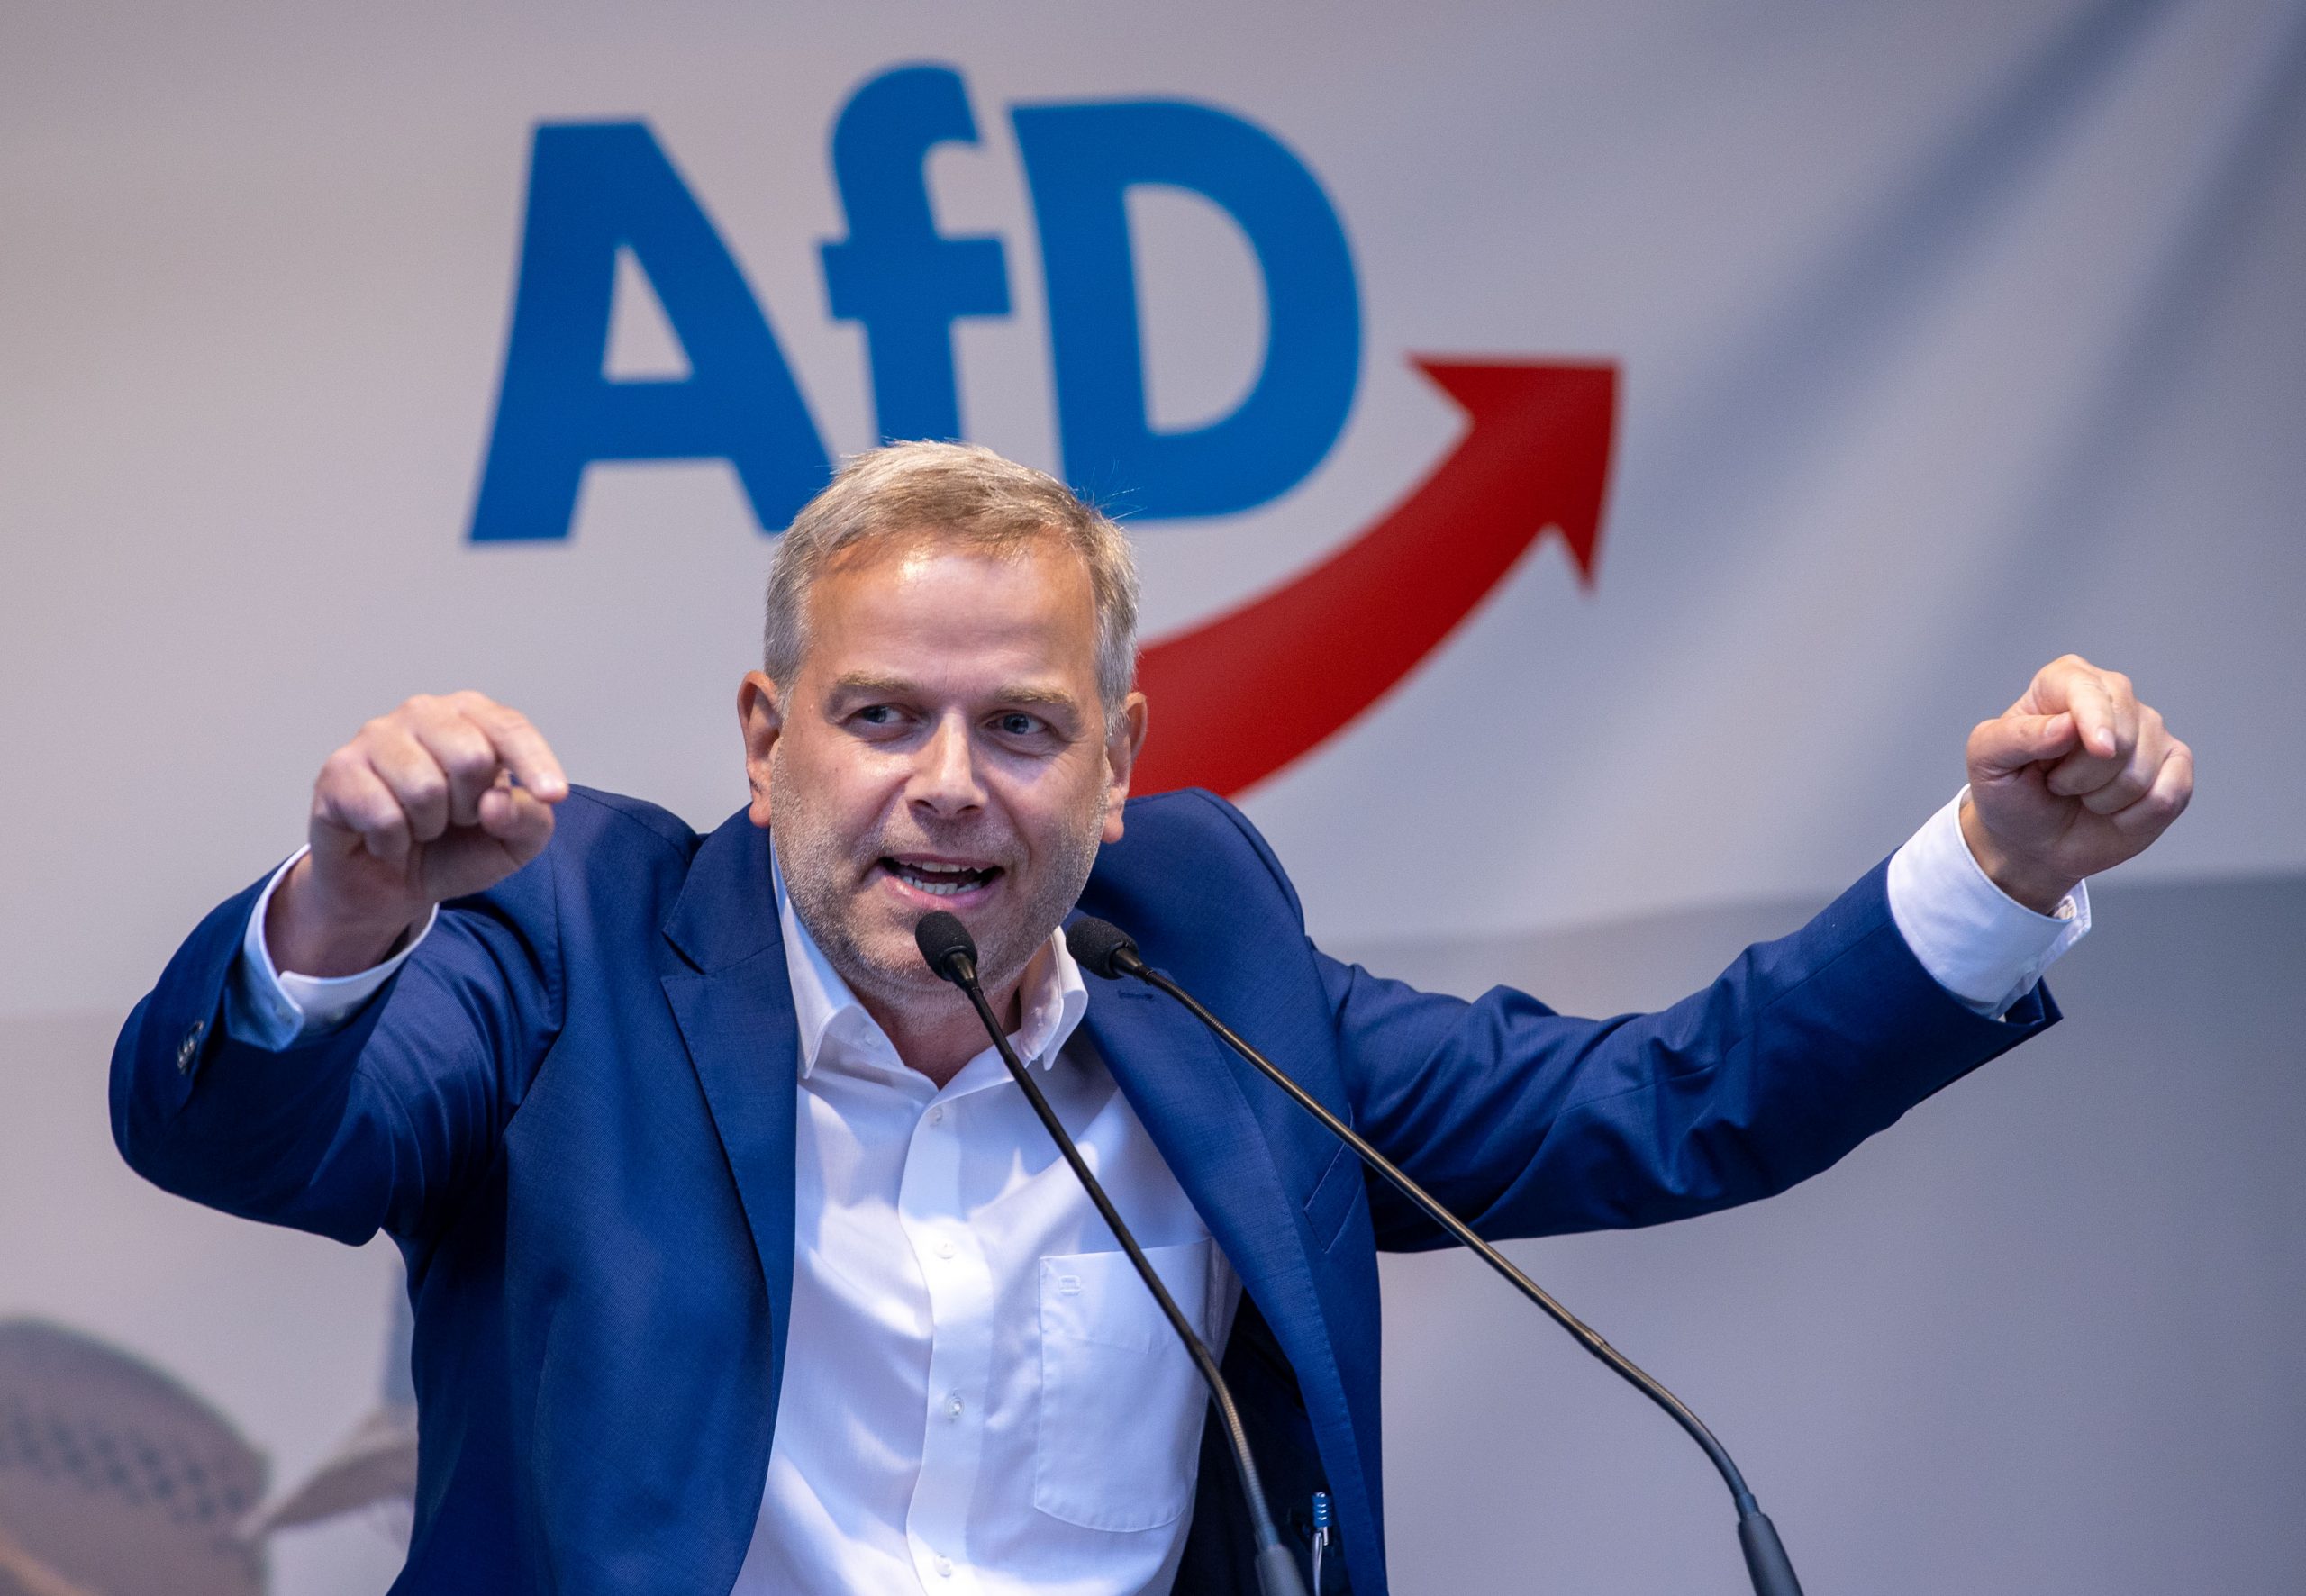 Leif-Erik Holm, Bundestagsabgeordneter und Spitzenkandidat in Mecklenburg-Vorpommern, spricht zum Auftakt der Wahlkampftour der AfD auf der Bühne.